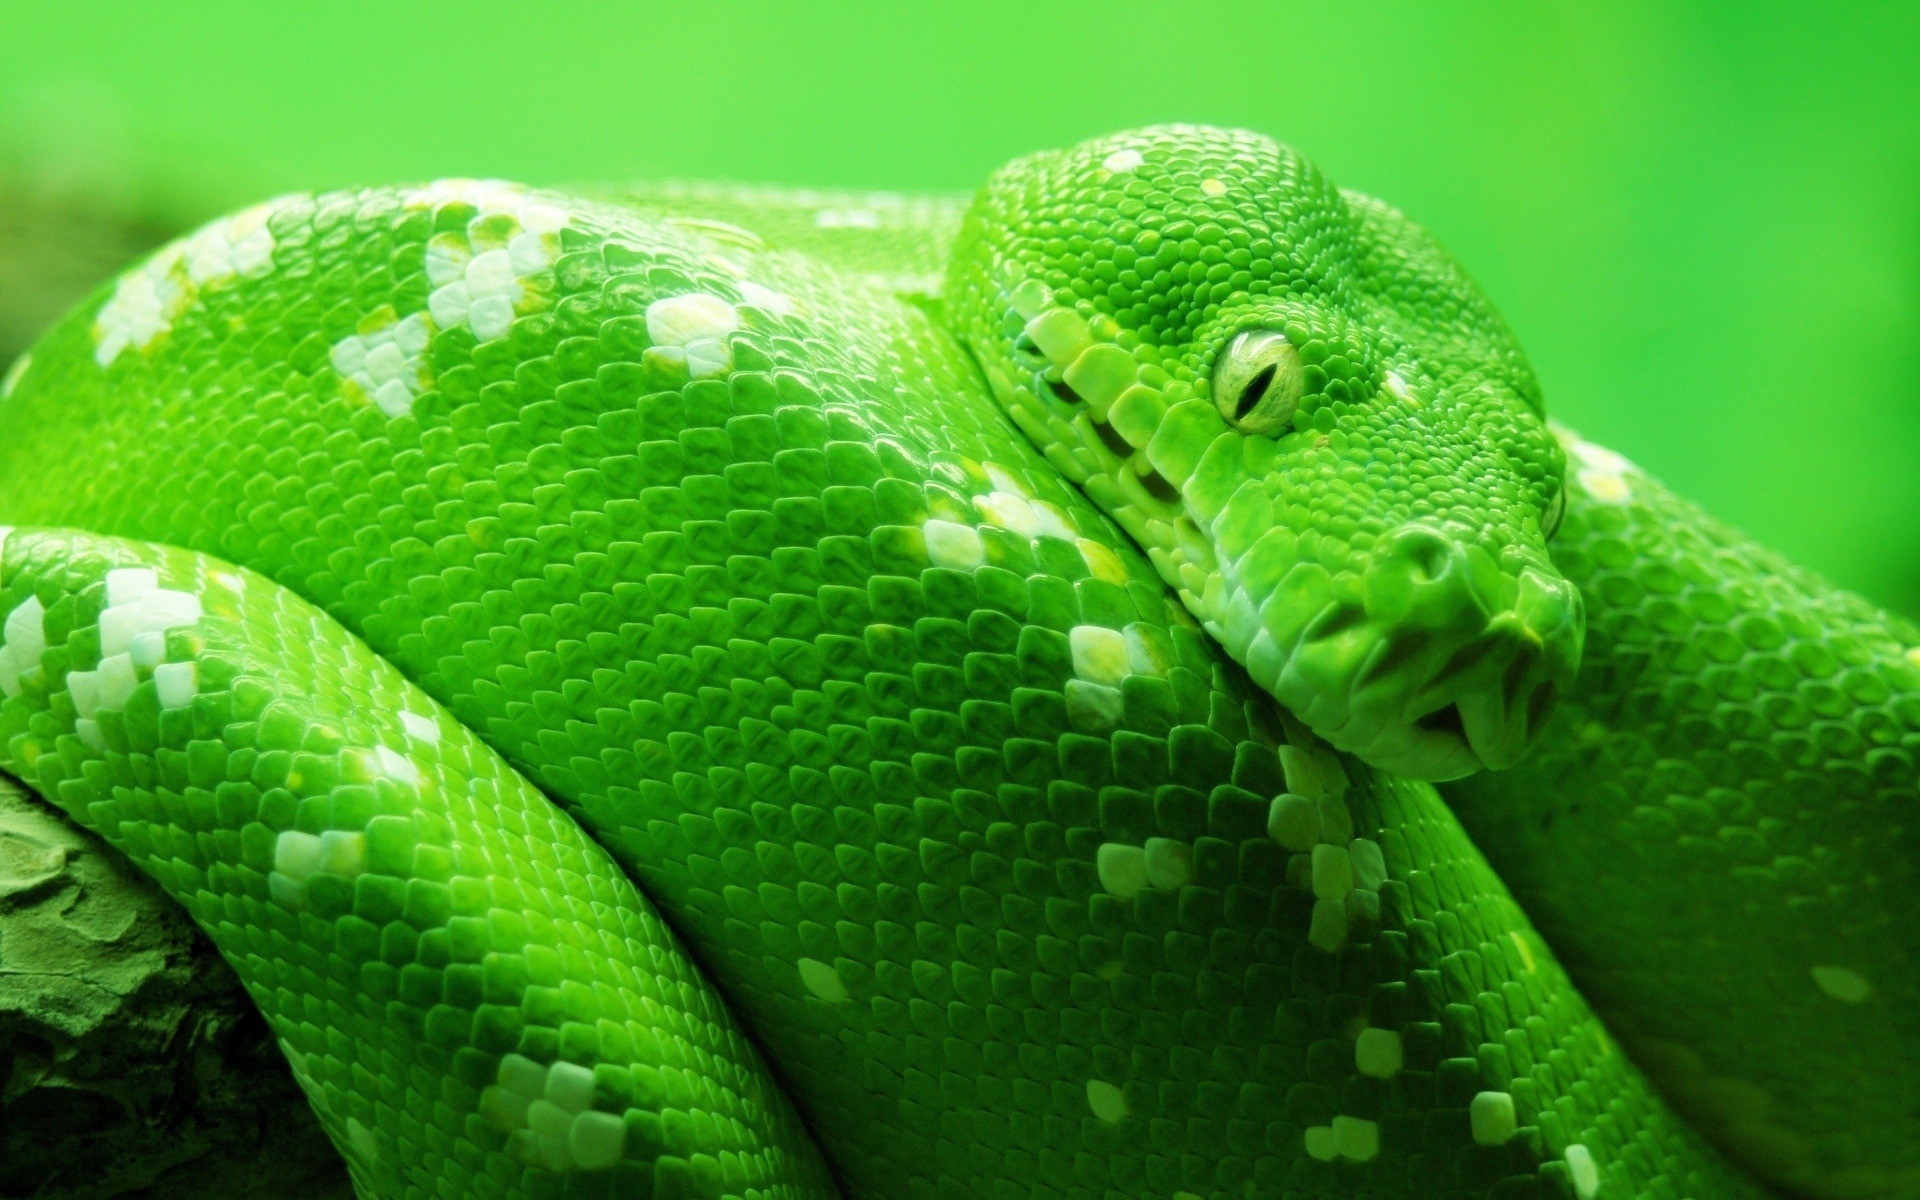 蛇绿色高清壁纸高清原图查看